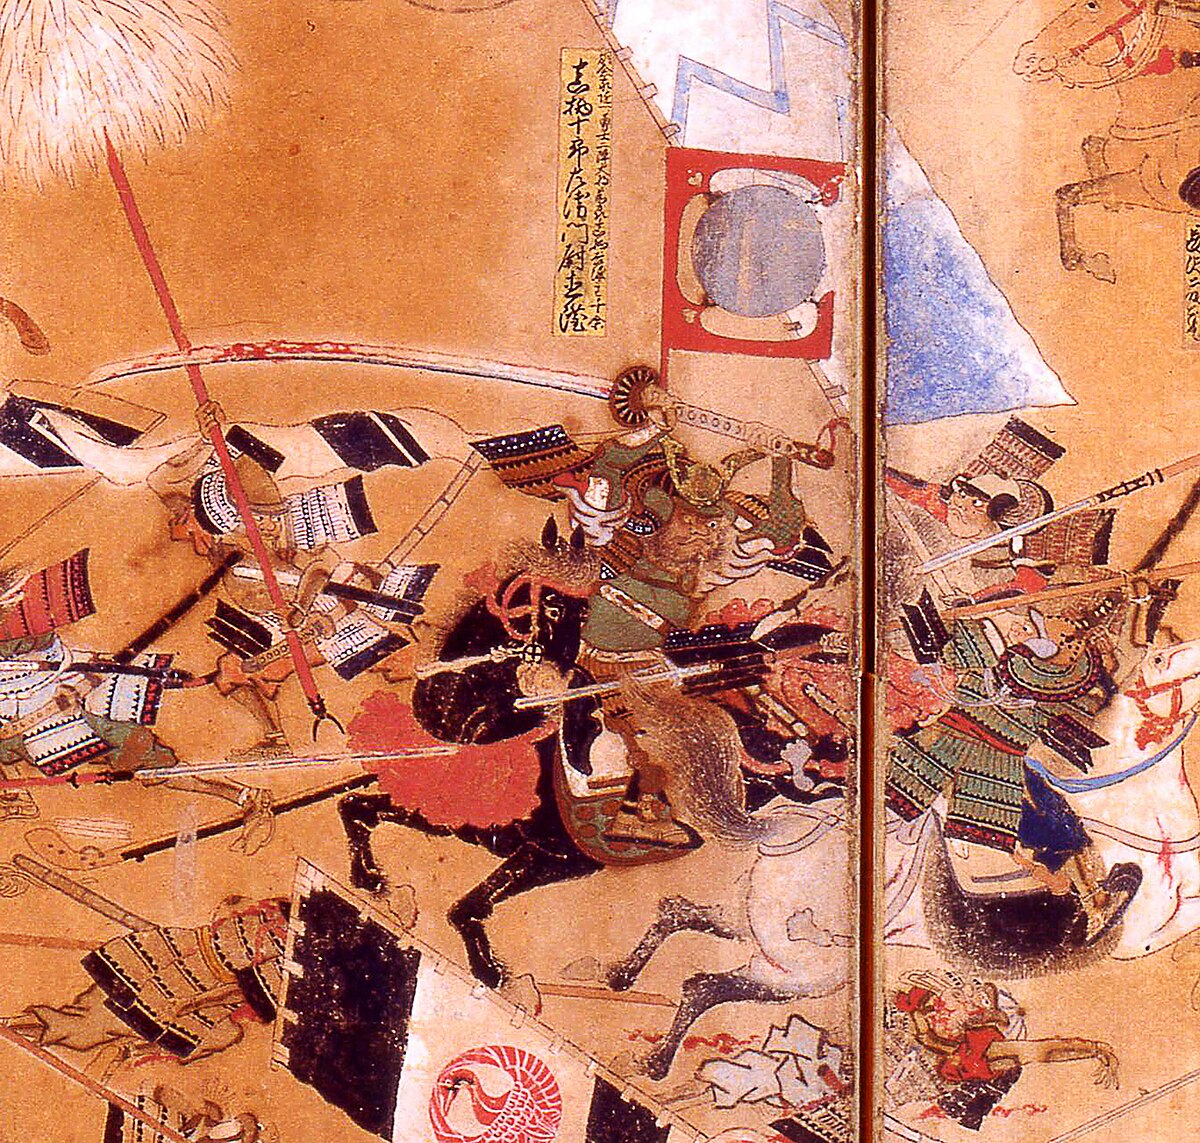 ファイル:Samurai with Odachi sword on horse.jpg - Wikipedia